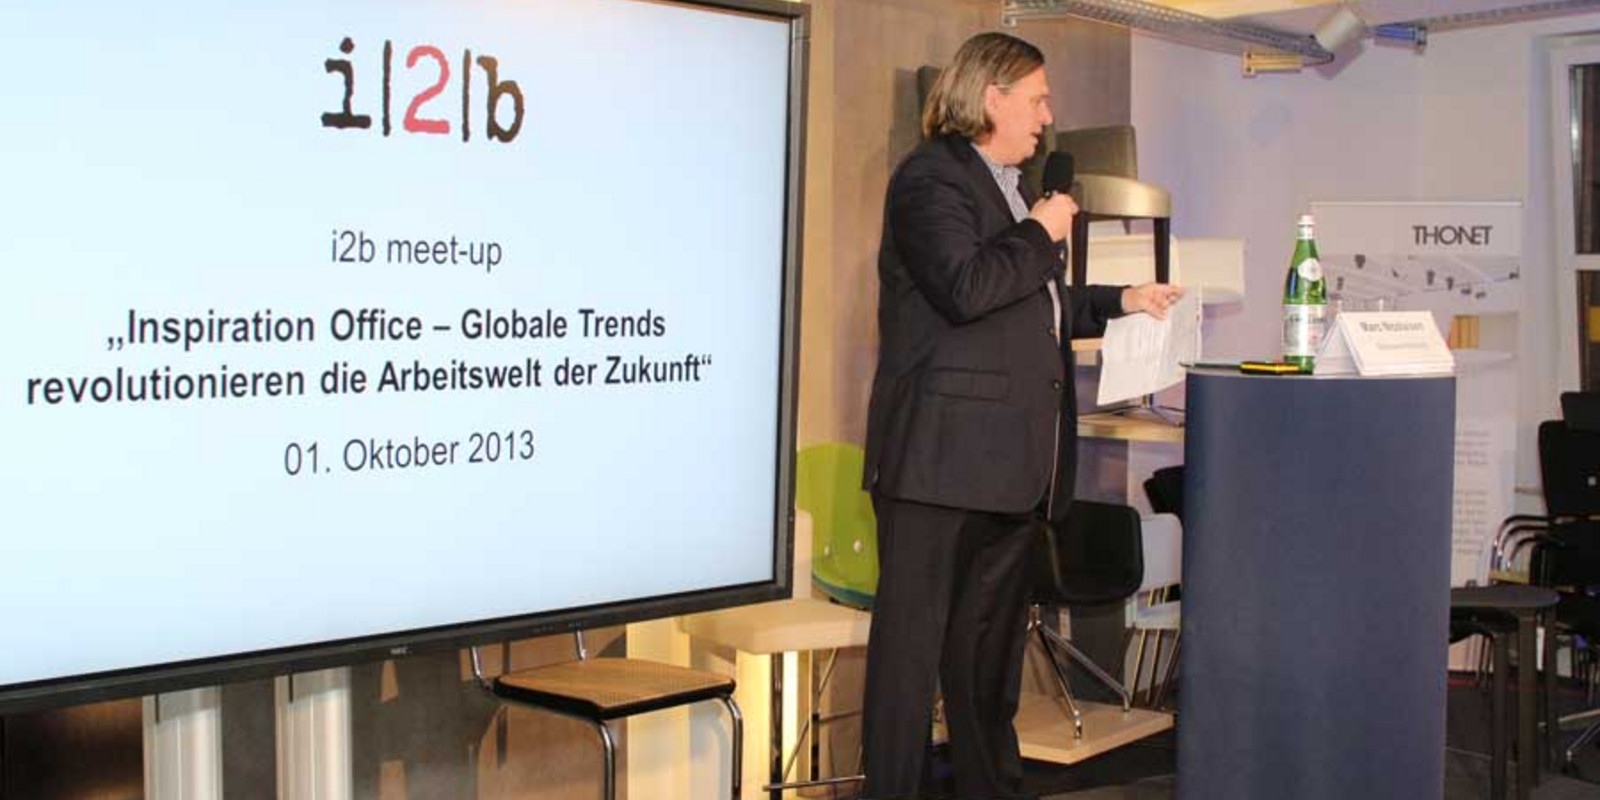 i2b-Netzwerkabend zum Thema "Inspiration Office" bei pro office Bremen Bild 42